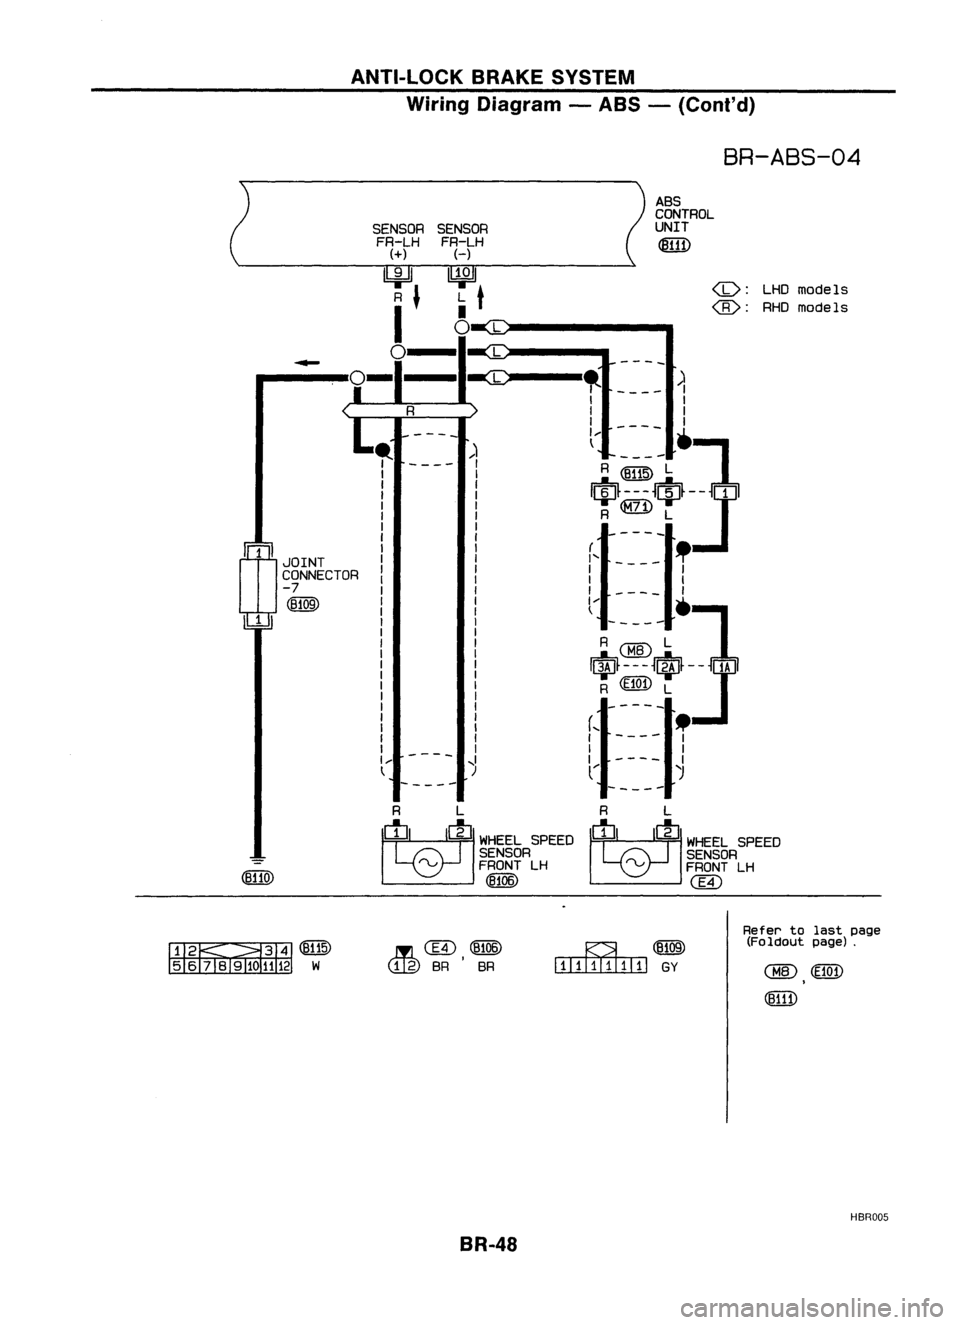 NISSAN ALMERA N15 1995  Service Manual ANTI-LOCKBRAKESYSTEM
Wiring Diagram -ABS -(Cont'd)

BR-ABS-04

ASS
CONTROL
SENSOR UNIT
FR-LH 
~

H

~ <D:
LHO
models
L 
t

• 
@:

RHOmodels

0 
L
L

- 
-
-
--

-ec 
,.

)

I

I 
I

I 
I
I 
I

--